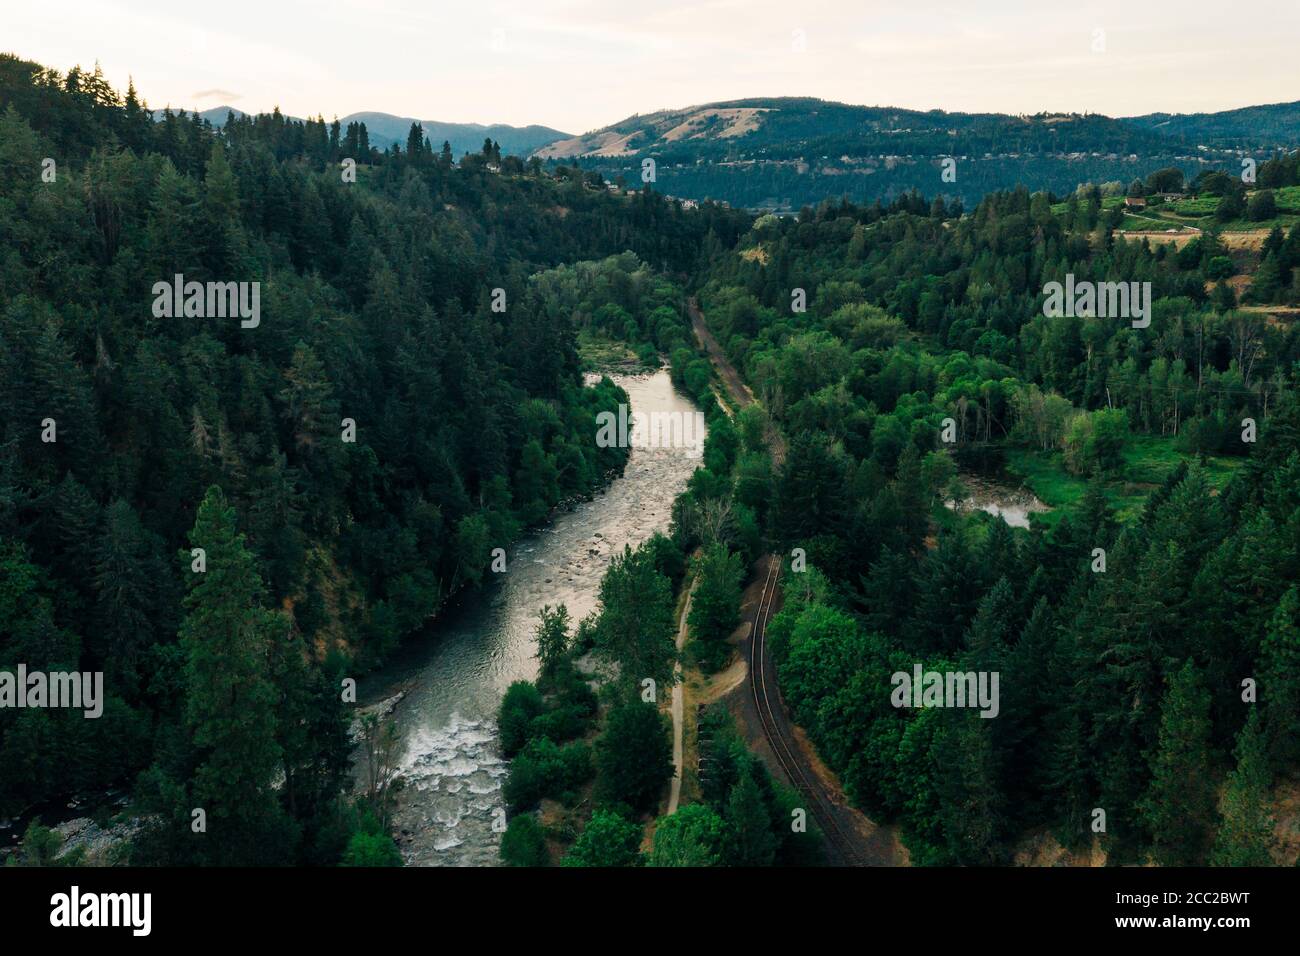 Hood River si snoda attraverso le foreste fino al fiume Columbia in OREGON. Foto Stock